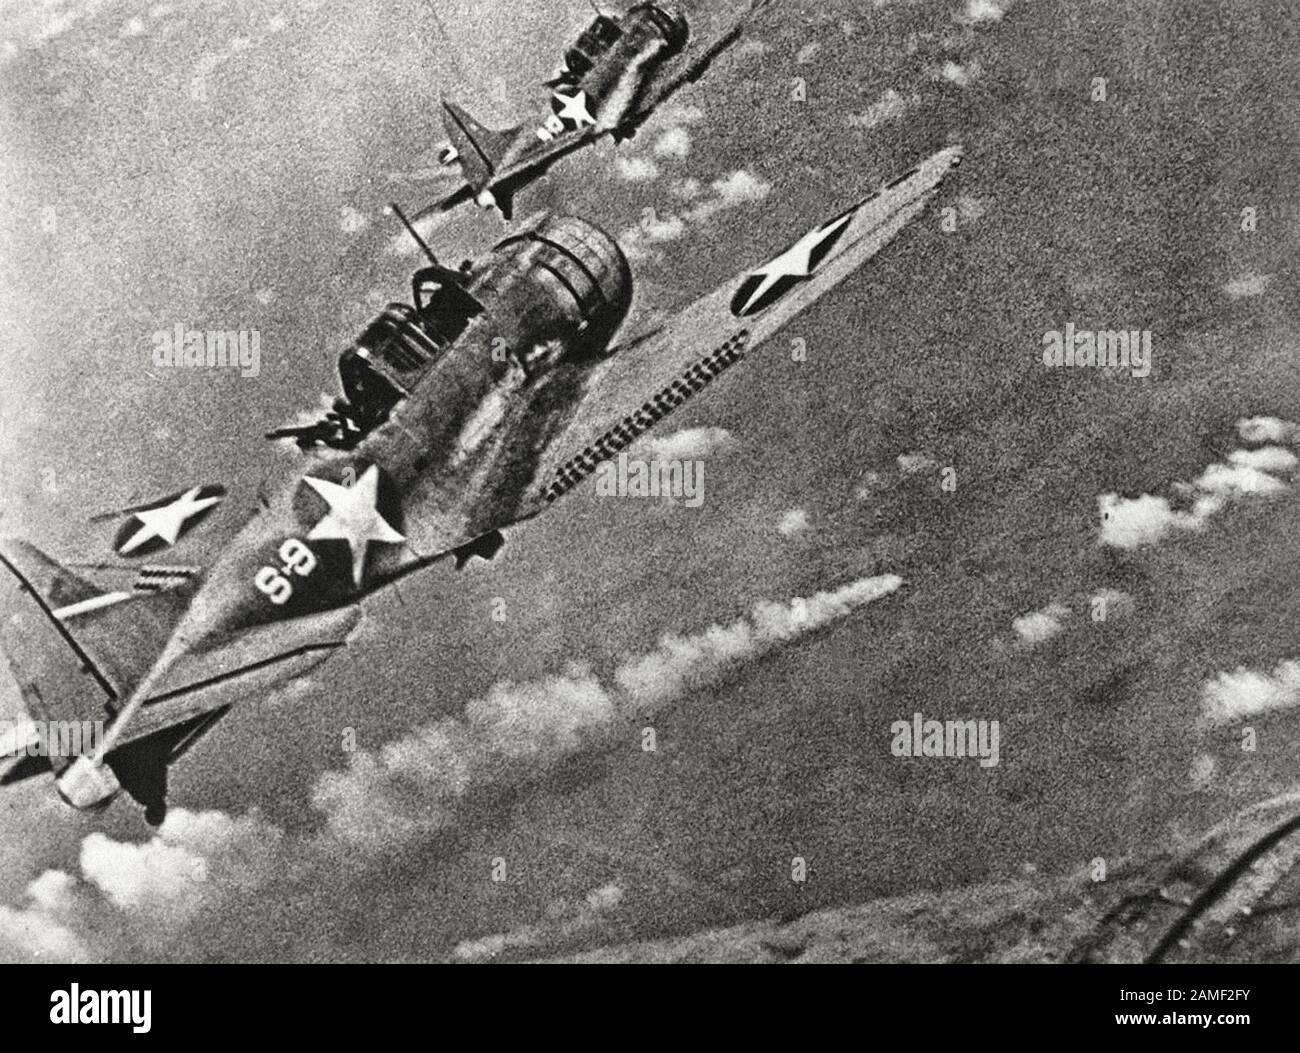 Amerikanische Kämpfer während des Angriffs auf die japanische Flotte vor Midway im Juni des Jahres 1942. Im Zentrum ist ein brennendes japanisches Schiff zu sehen. Das japanische airc Stockfoto